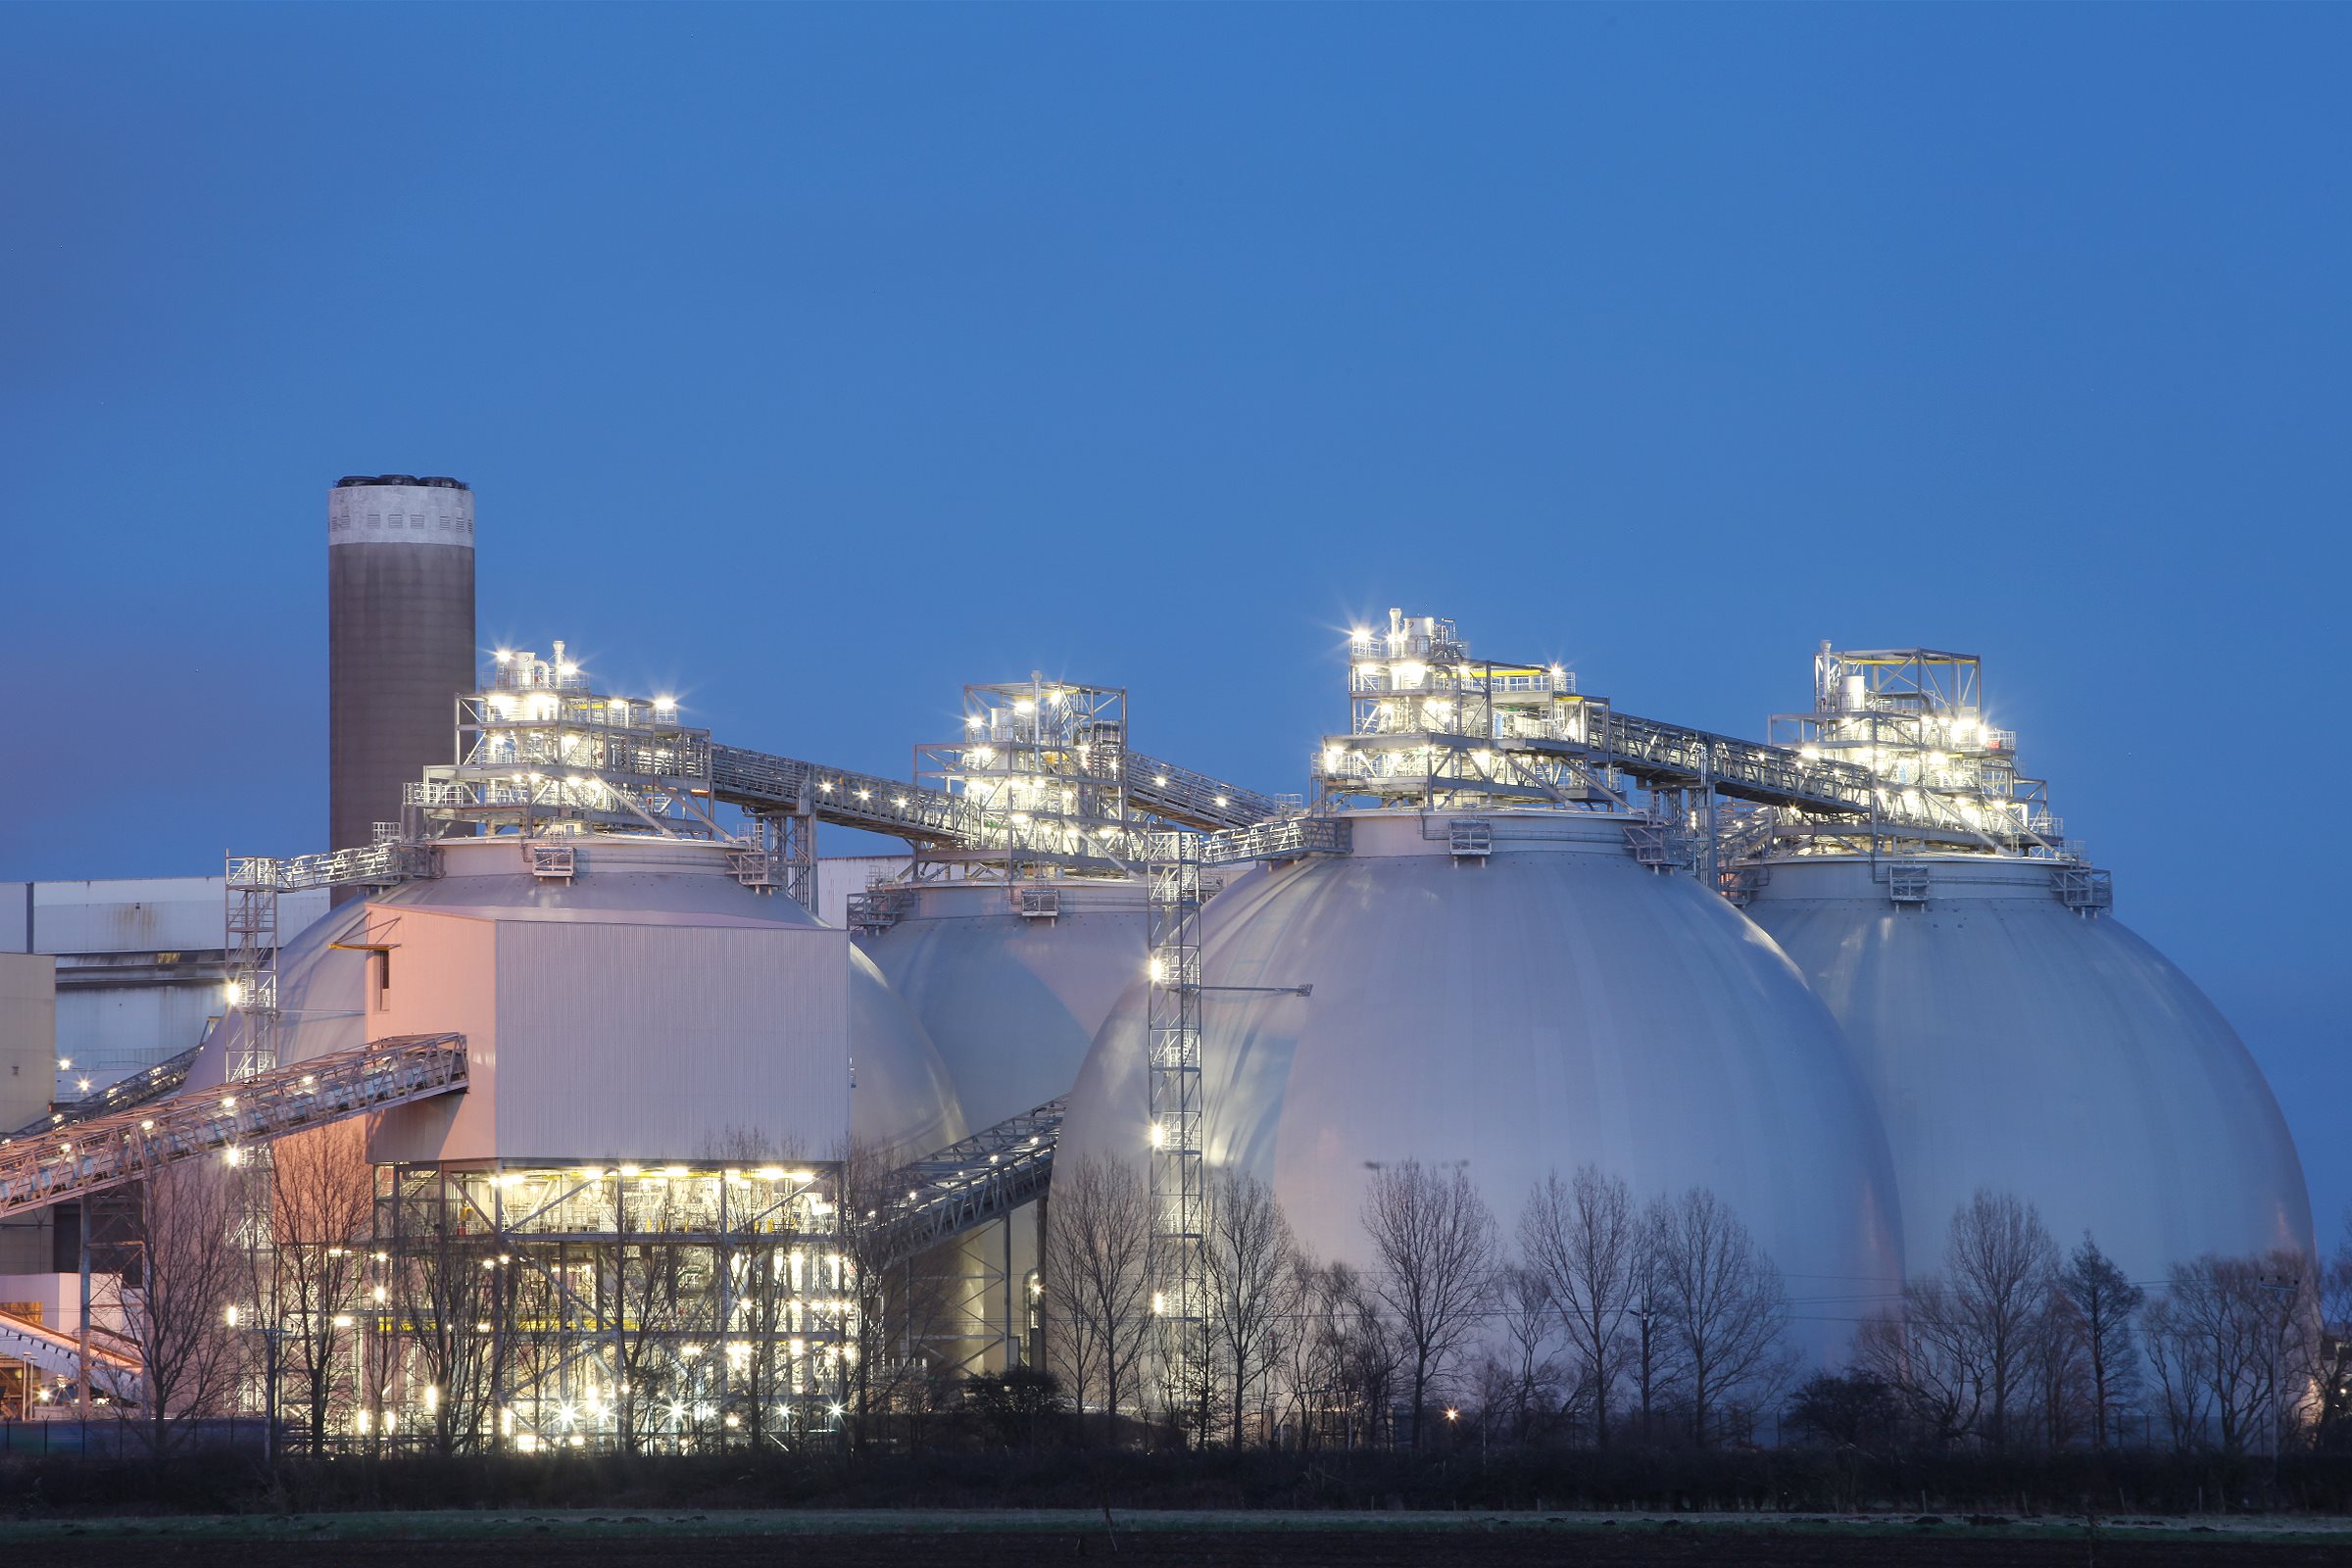 Etanol quer emitir créditos com carbono armazenado. Na imagem: Usina de Drax, em Yorkshire, na Inglaterra, realiza captura e armazenamento de carbono de bioenergia (BECCS) para capturar até 1 tonelada de CO₂ diariamente (Foto: Drax/Divulgação)